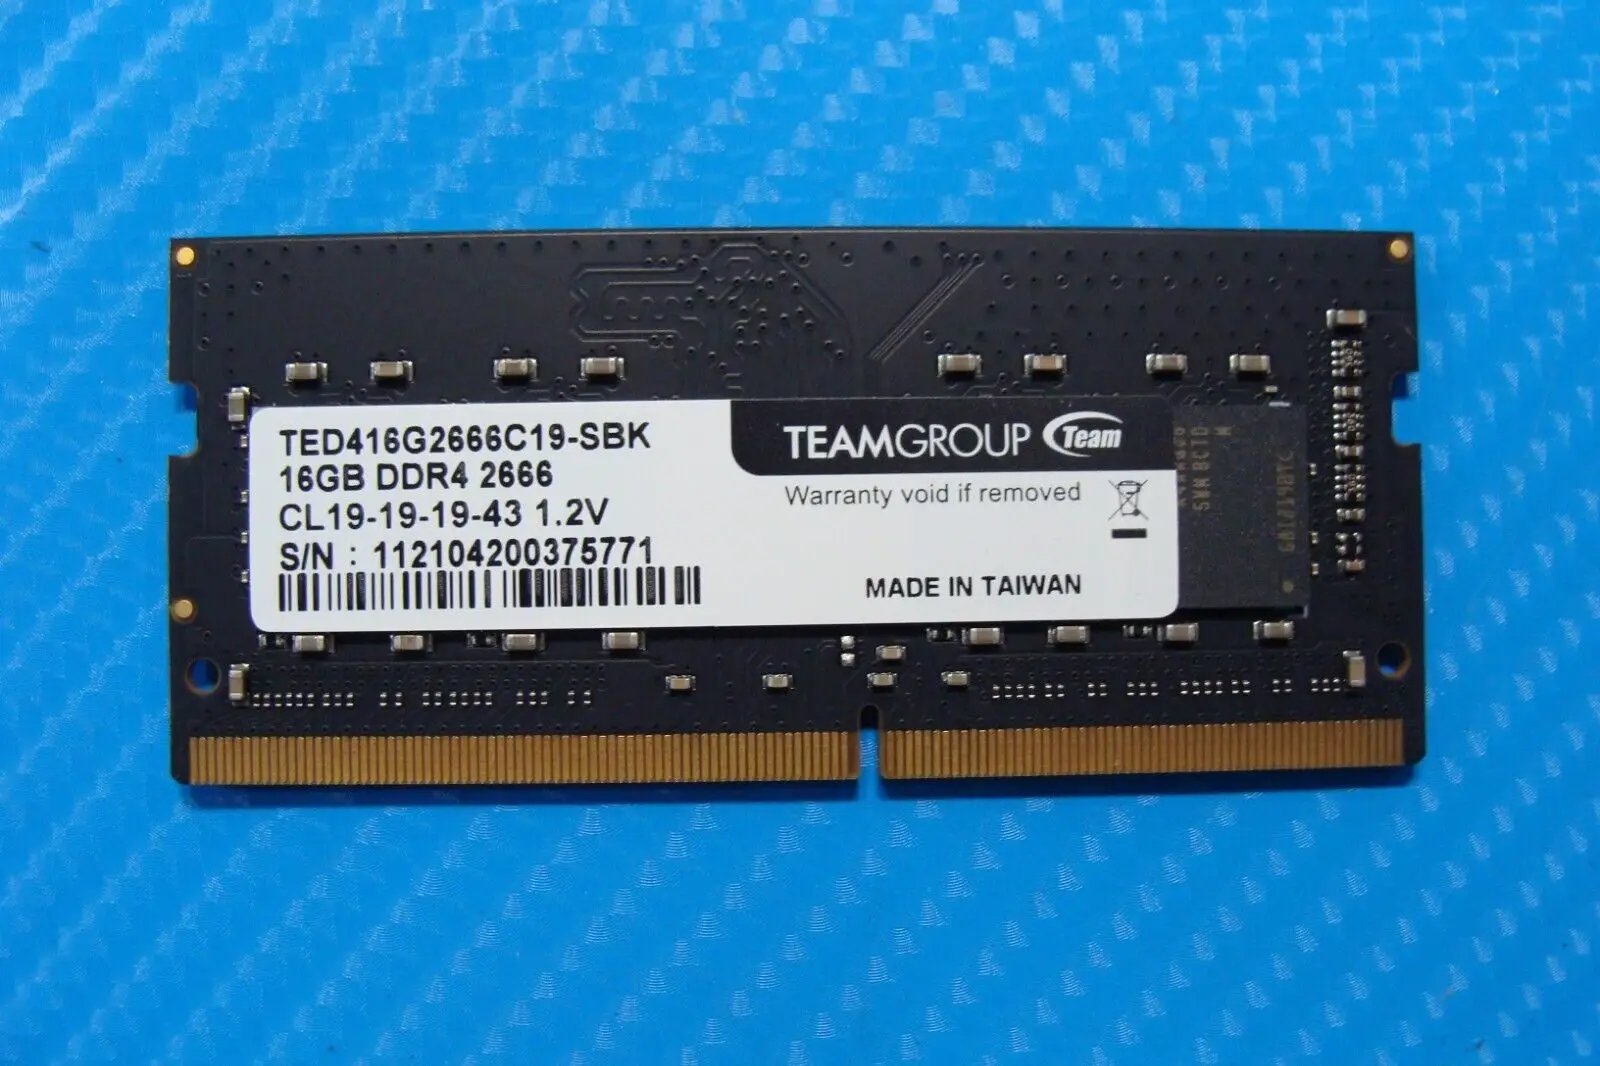 Lenovo E15 Team Group 16GB DDR4 2666 Memory RAM SO-DIMM TED416G2666C19-SBK